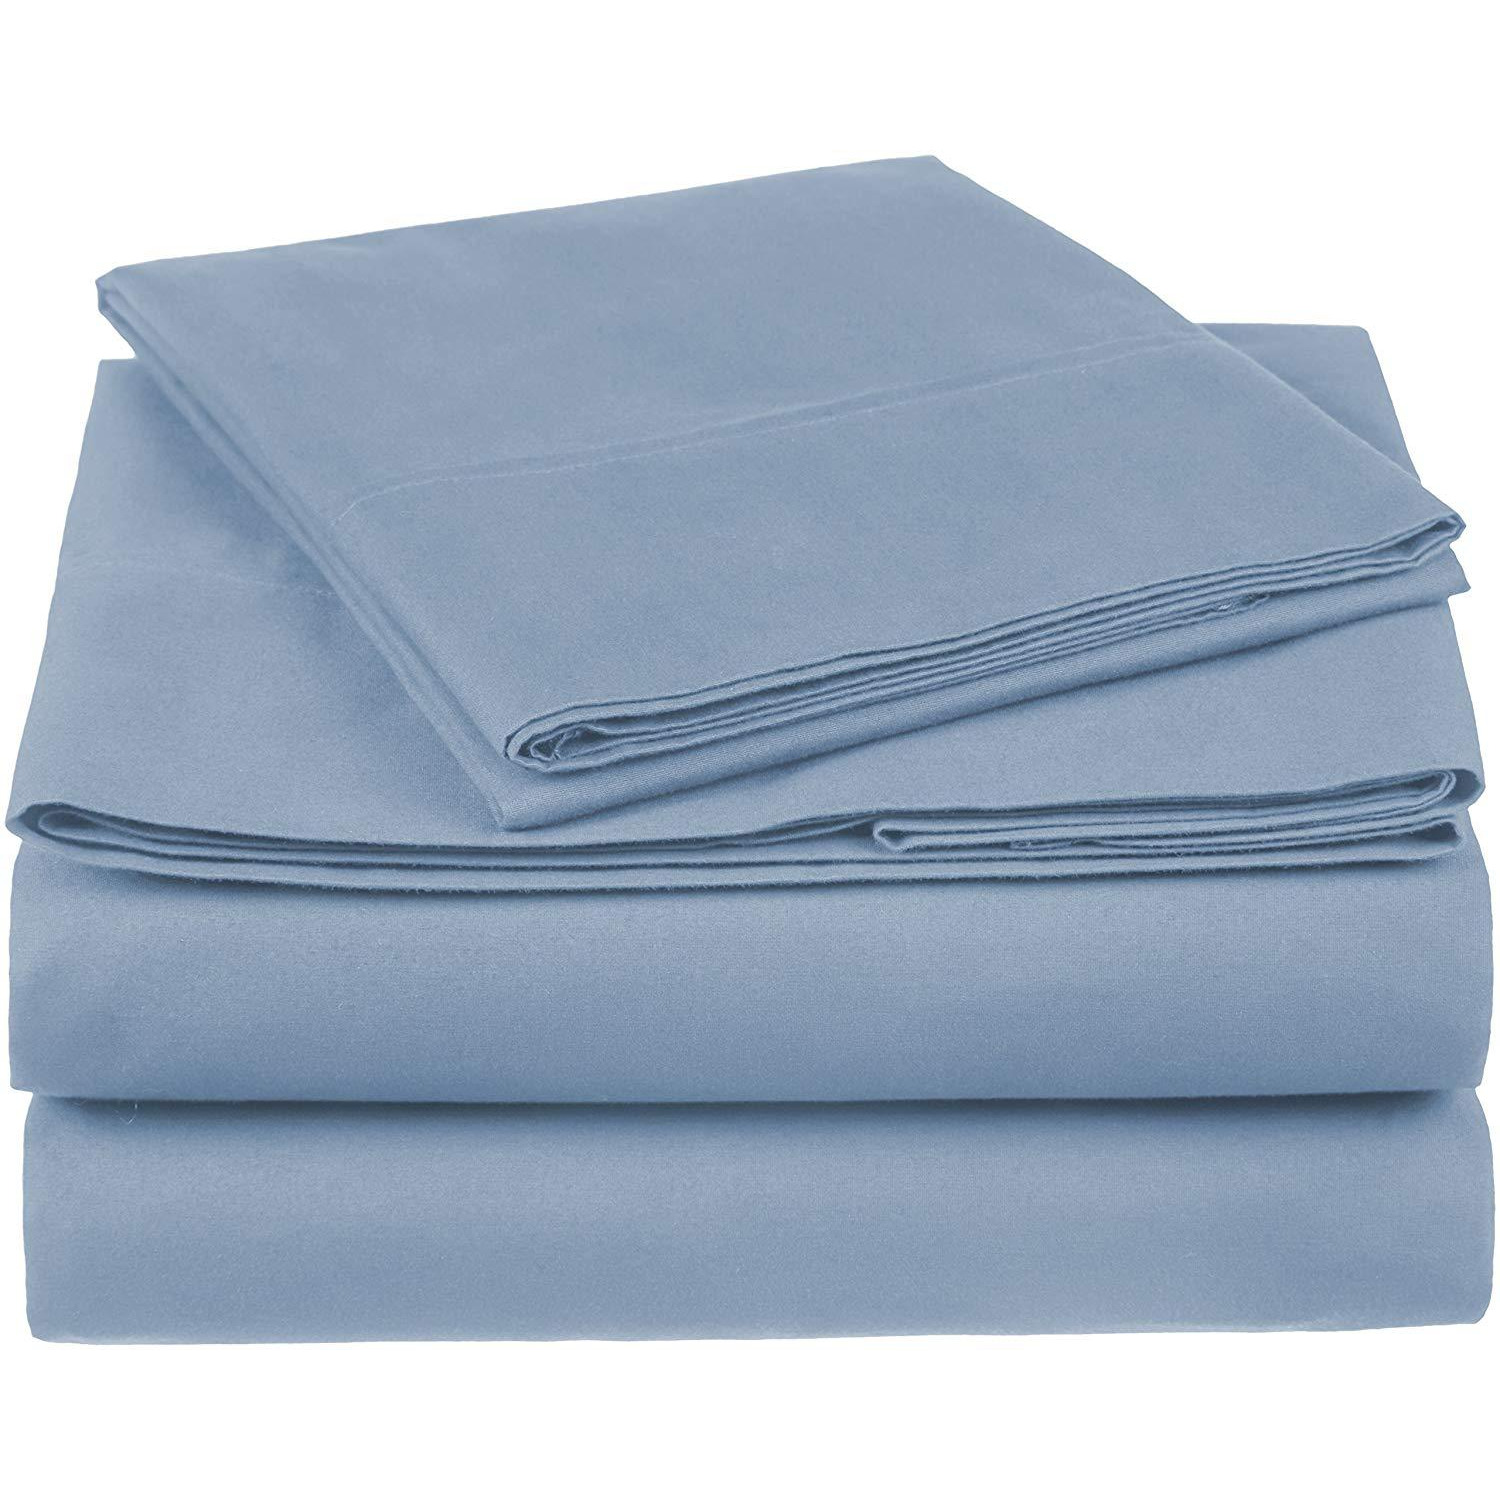 100% Cotton Sheet Set - 500 Thread Count (Piece:4 PIECE, Size:QUEEN, Color:BLUE)